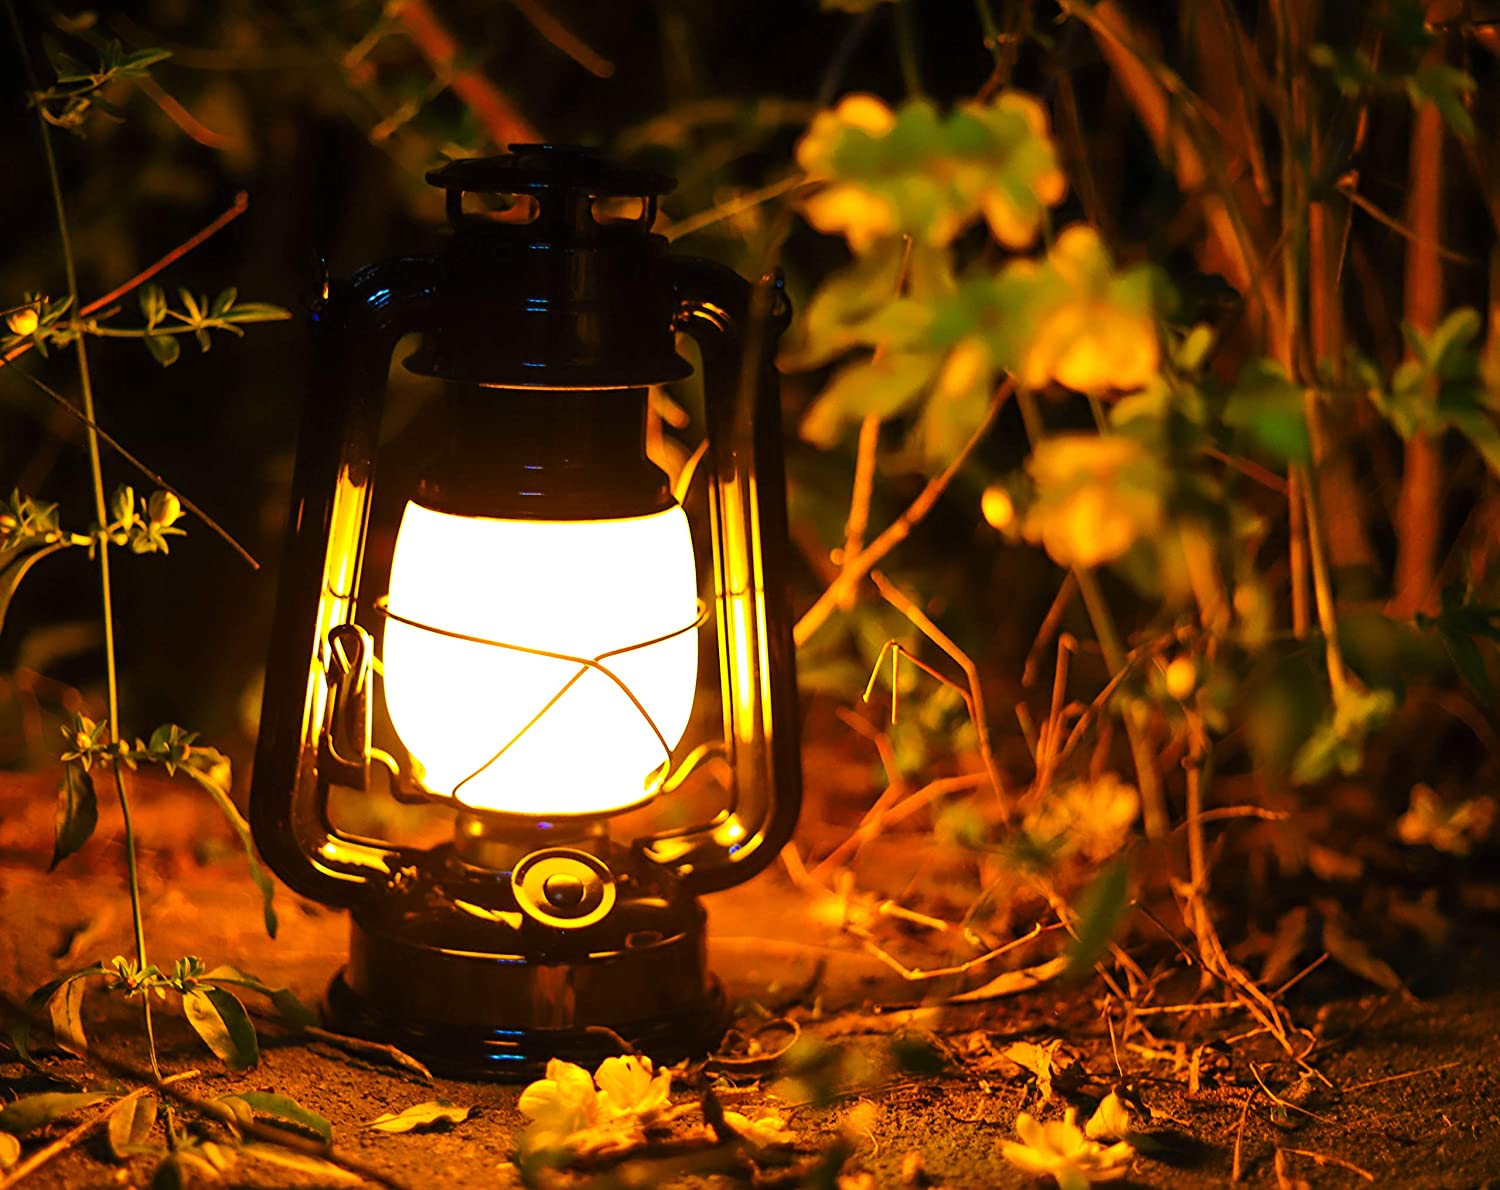 YAKii LED Vintage Lantern Metal Hanging Hurricane Lantern 12 LED